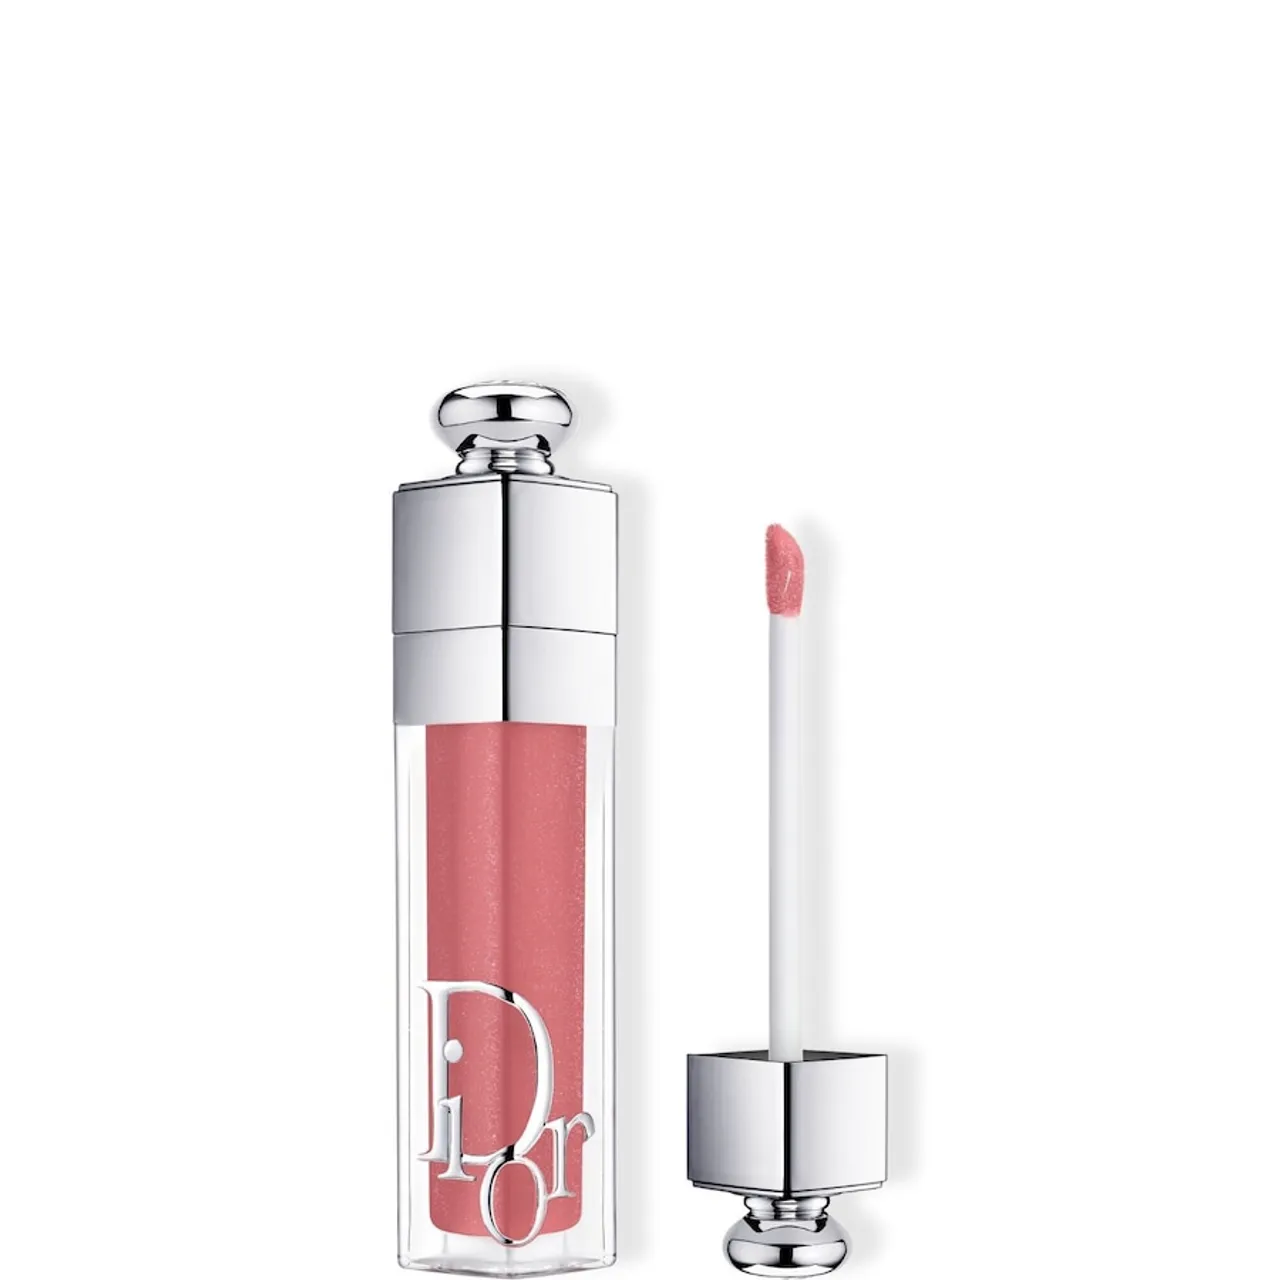 DIOR - Dior Addict Lip Maximizer Aufpolsternder Lipgloss – Feuchtigkeitspflege und Volumeneffekt – Sofort und langanhaltend 6 ml 012 - ROSEWOOD